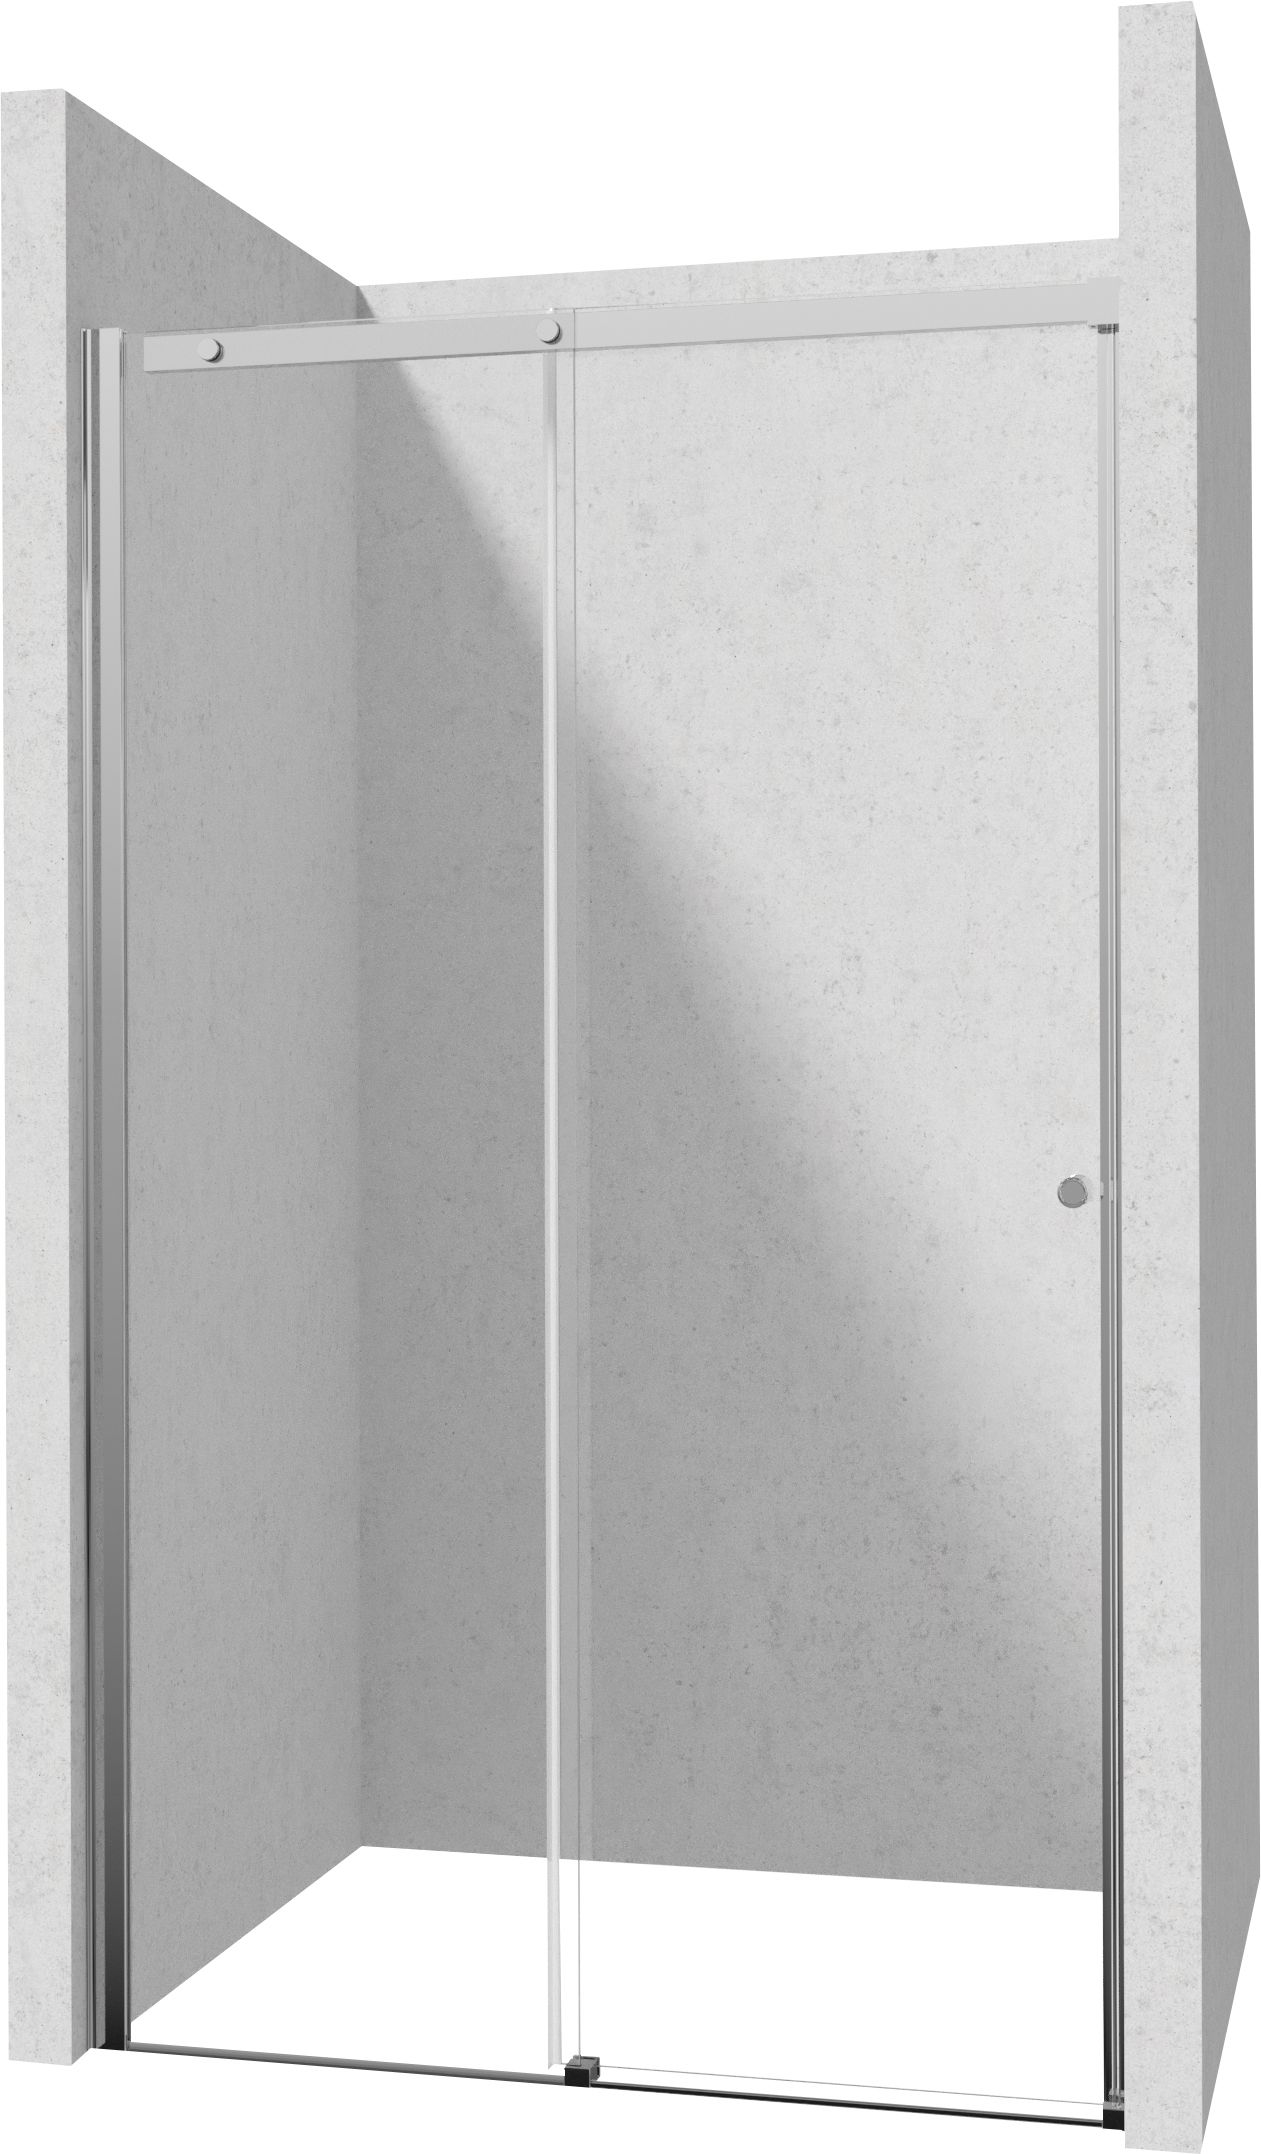 Drzwi prysznicowe 140 cm - przesuwne - KTSP014P - Główne zdjęcie produktowe